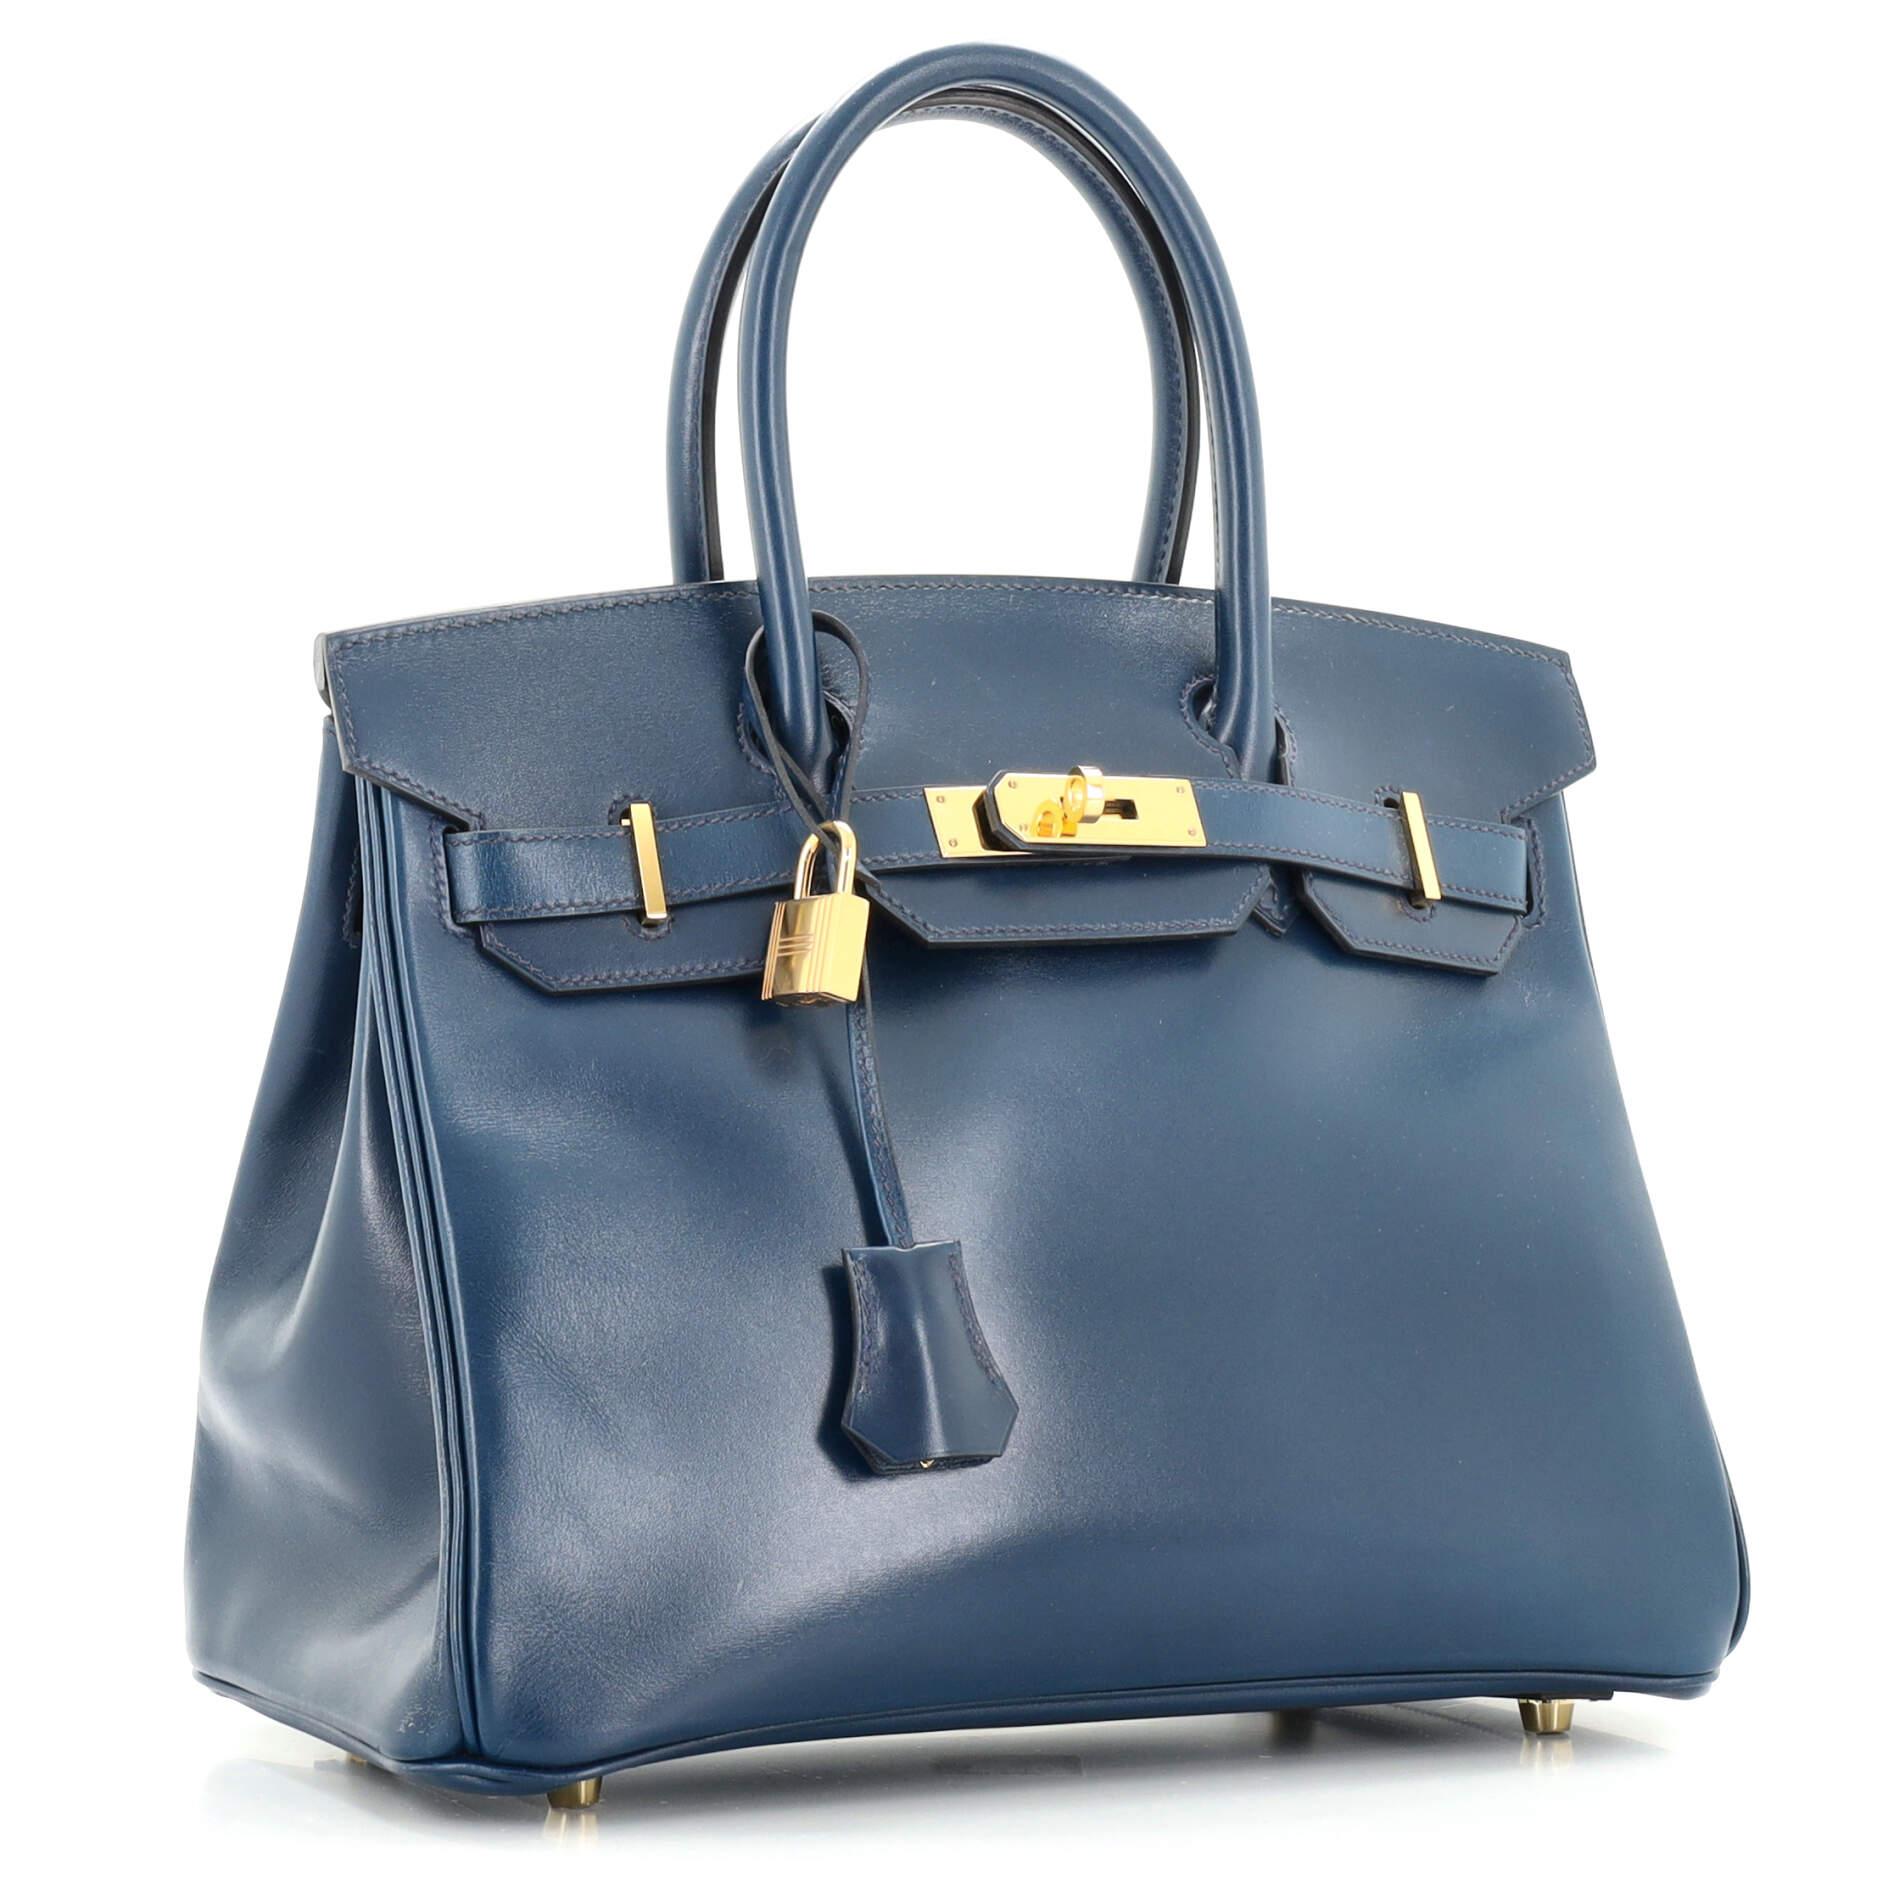 Blue Hermes Birkin Handbag Bleu De Prusse Tadelakt with Gold Hardware 30